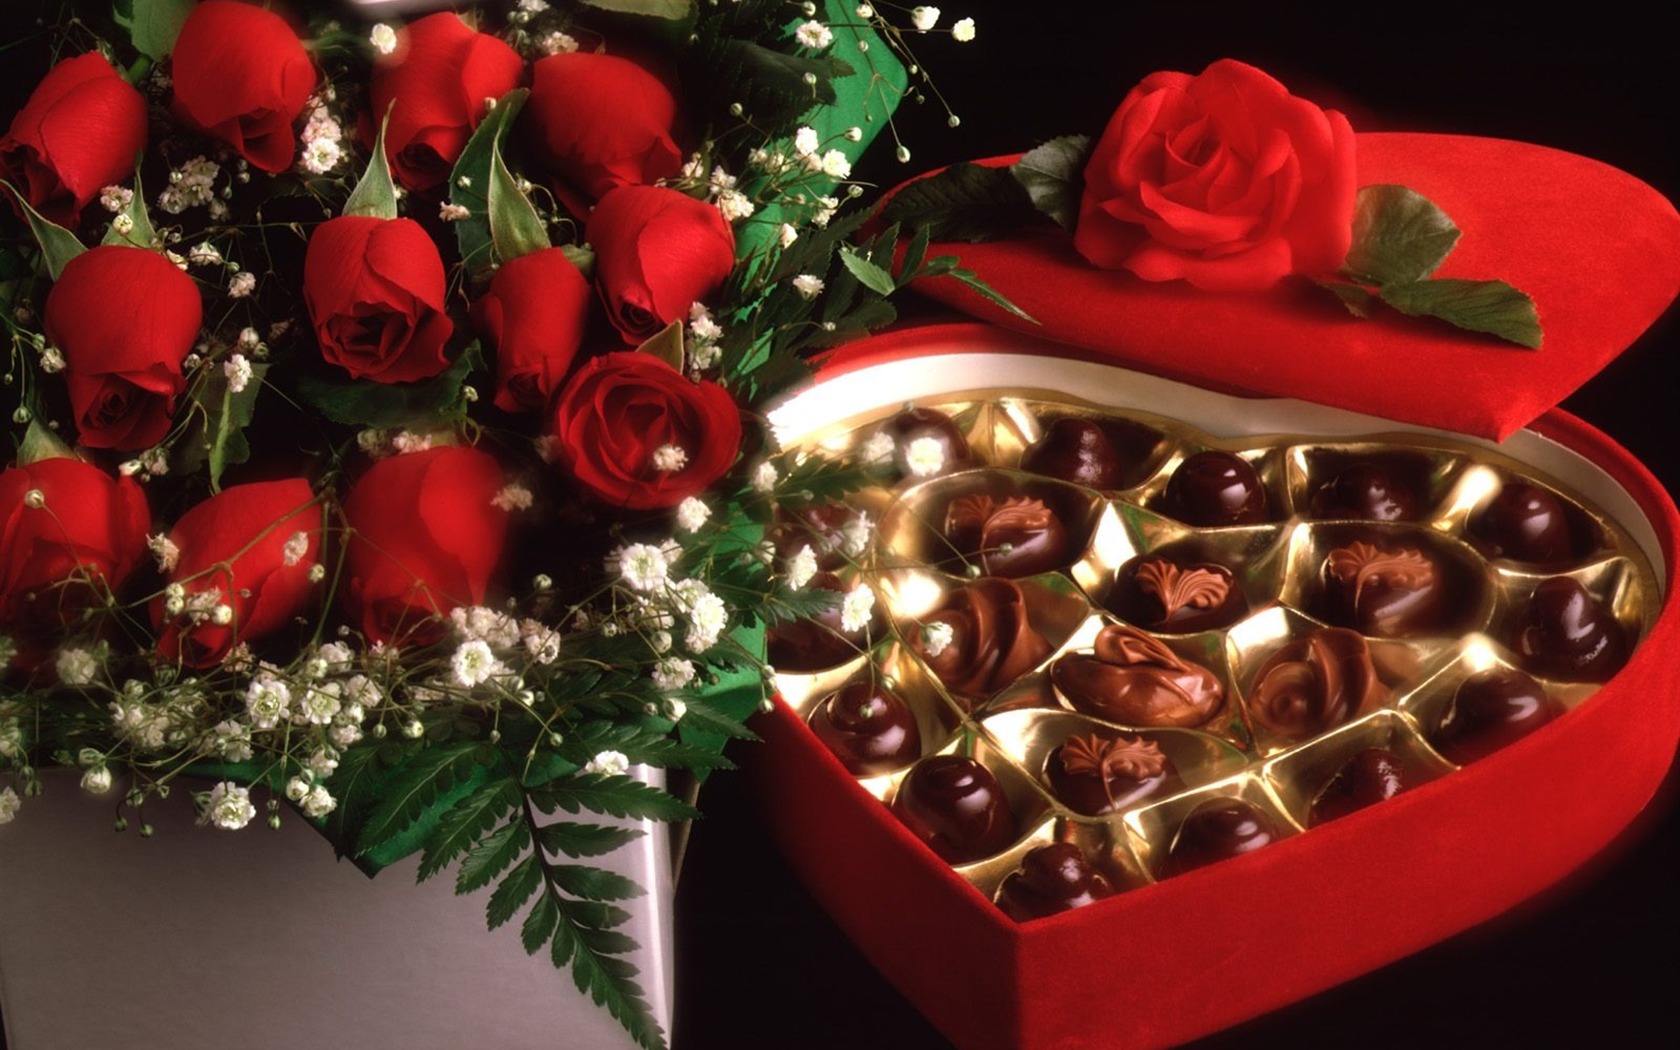 Le indélébile Saint Valentin au chocolat #4 - 1680x1050